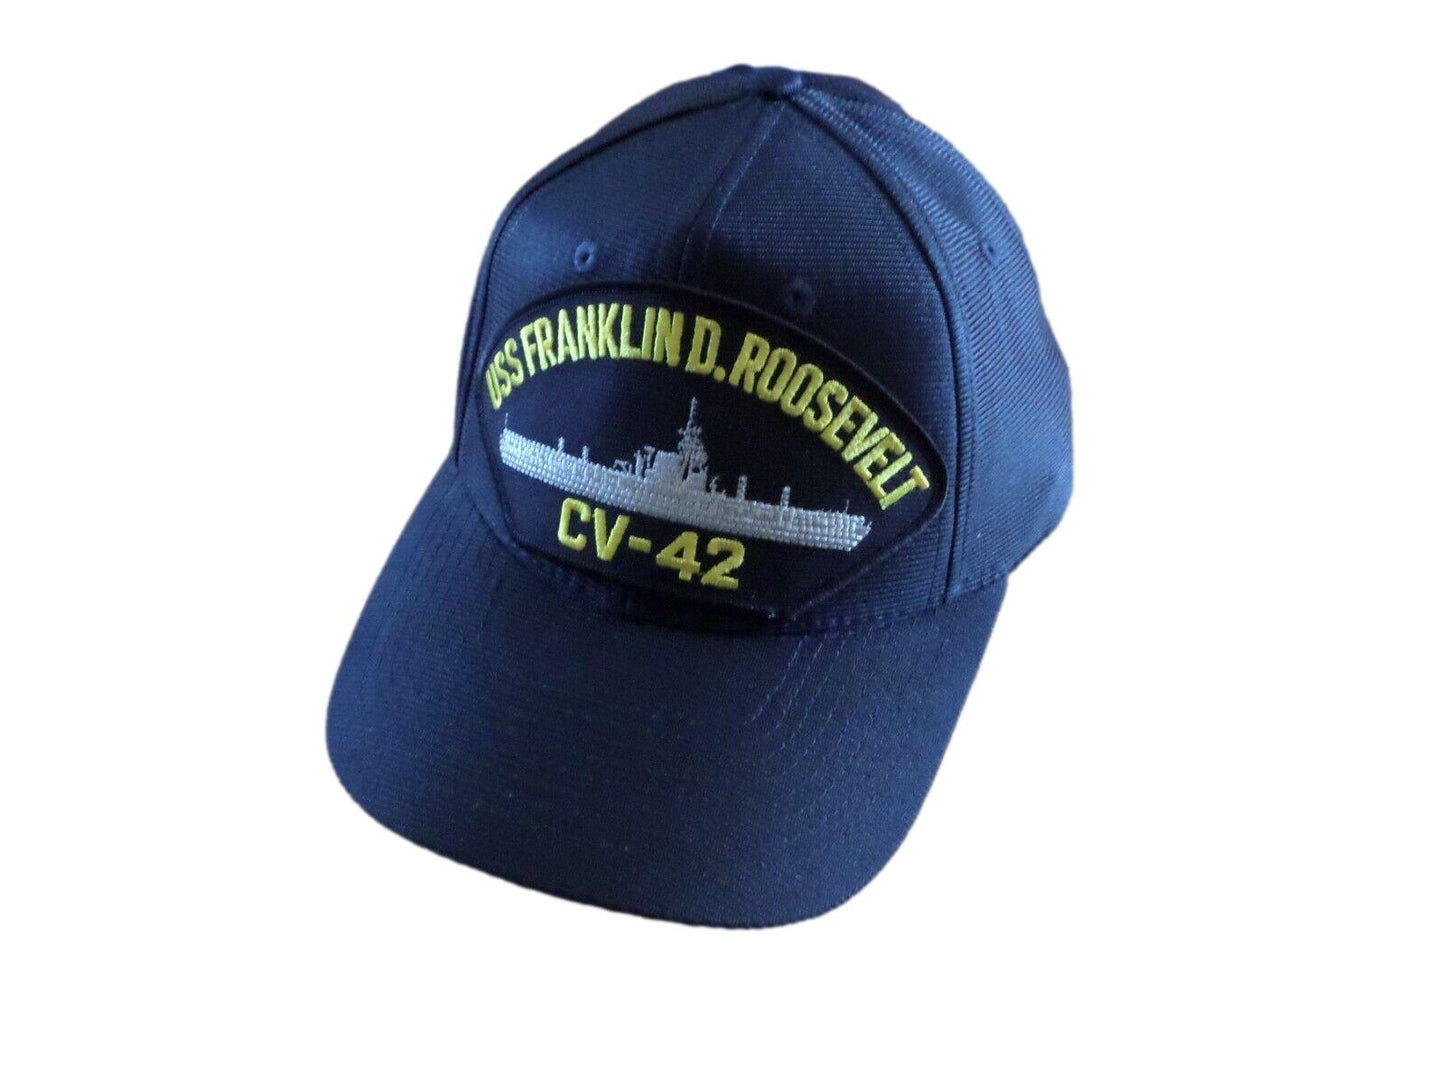 USS FRANKLIN D. ROOSEVELT CV-42 U.S NAVY MILITARY HAT OFFICIAL BALL CAP U.S.A